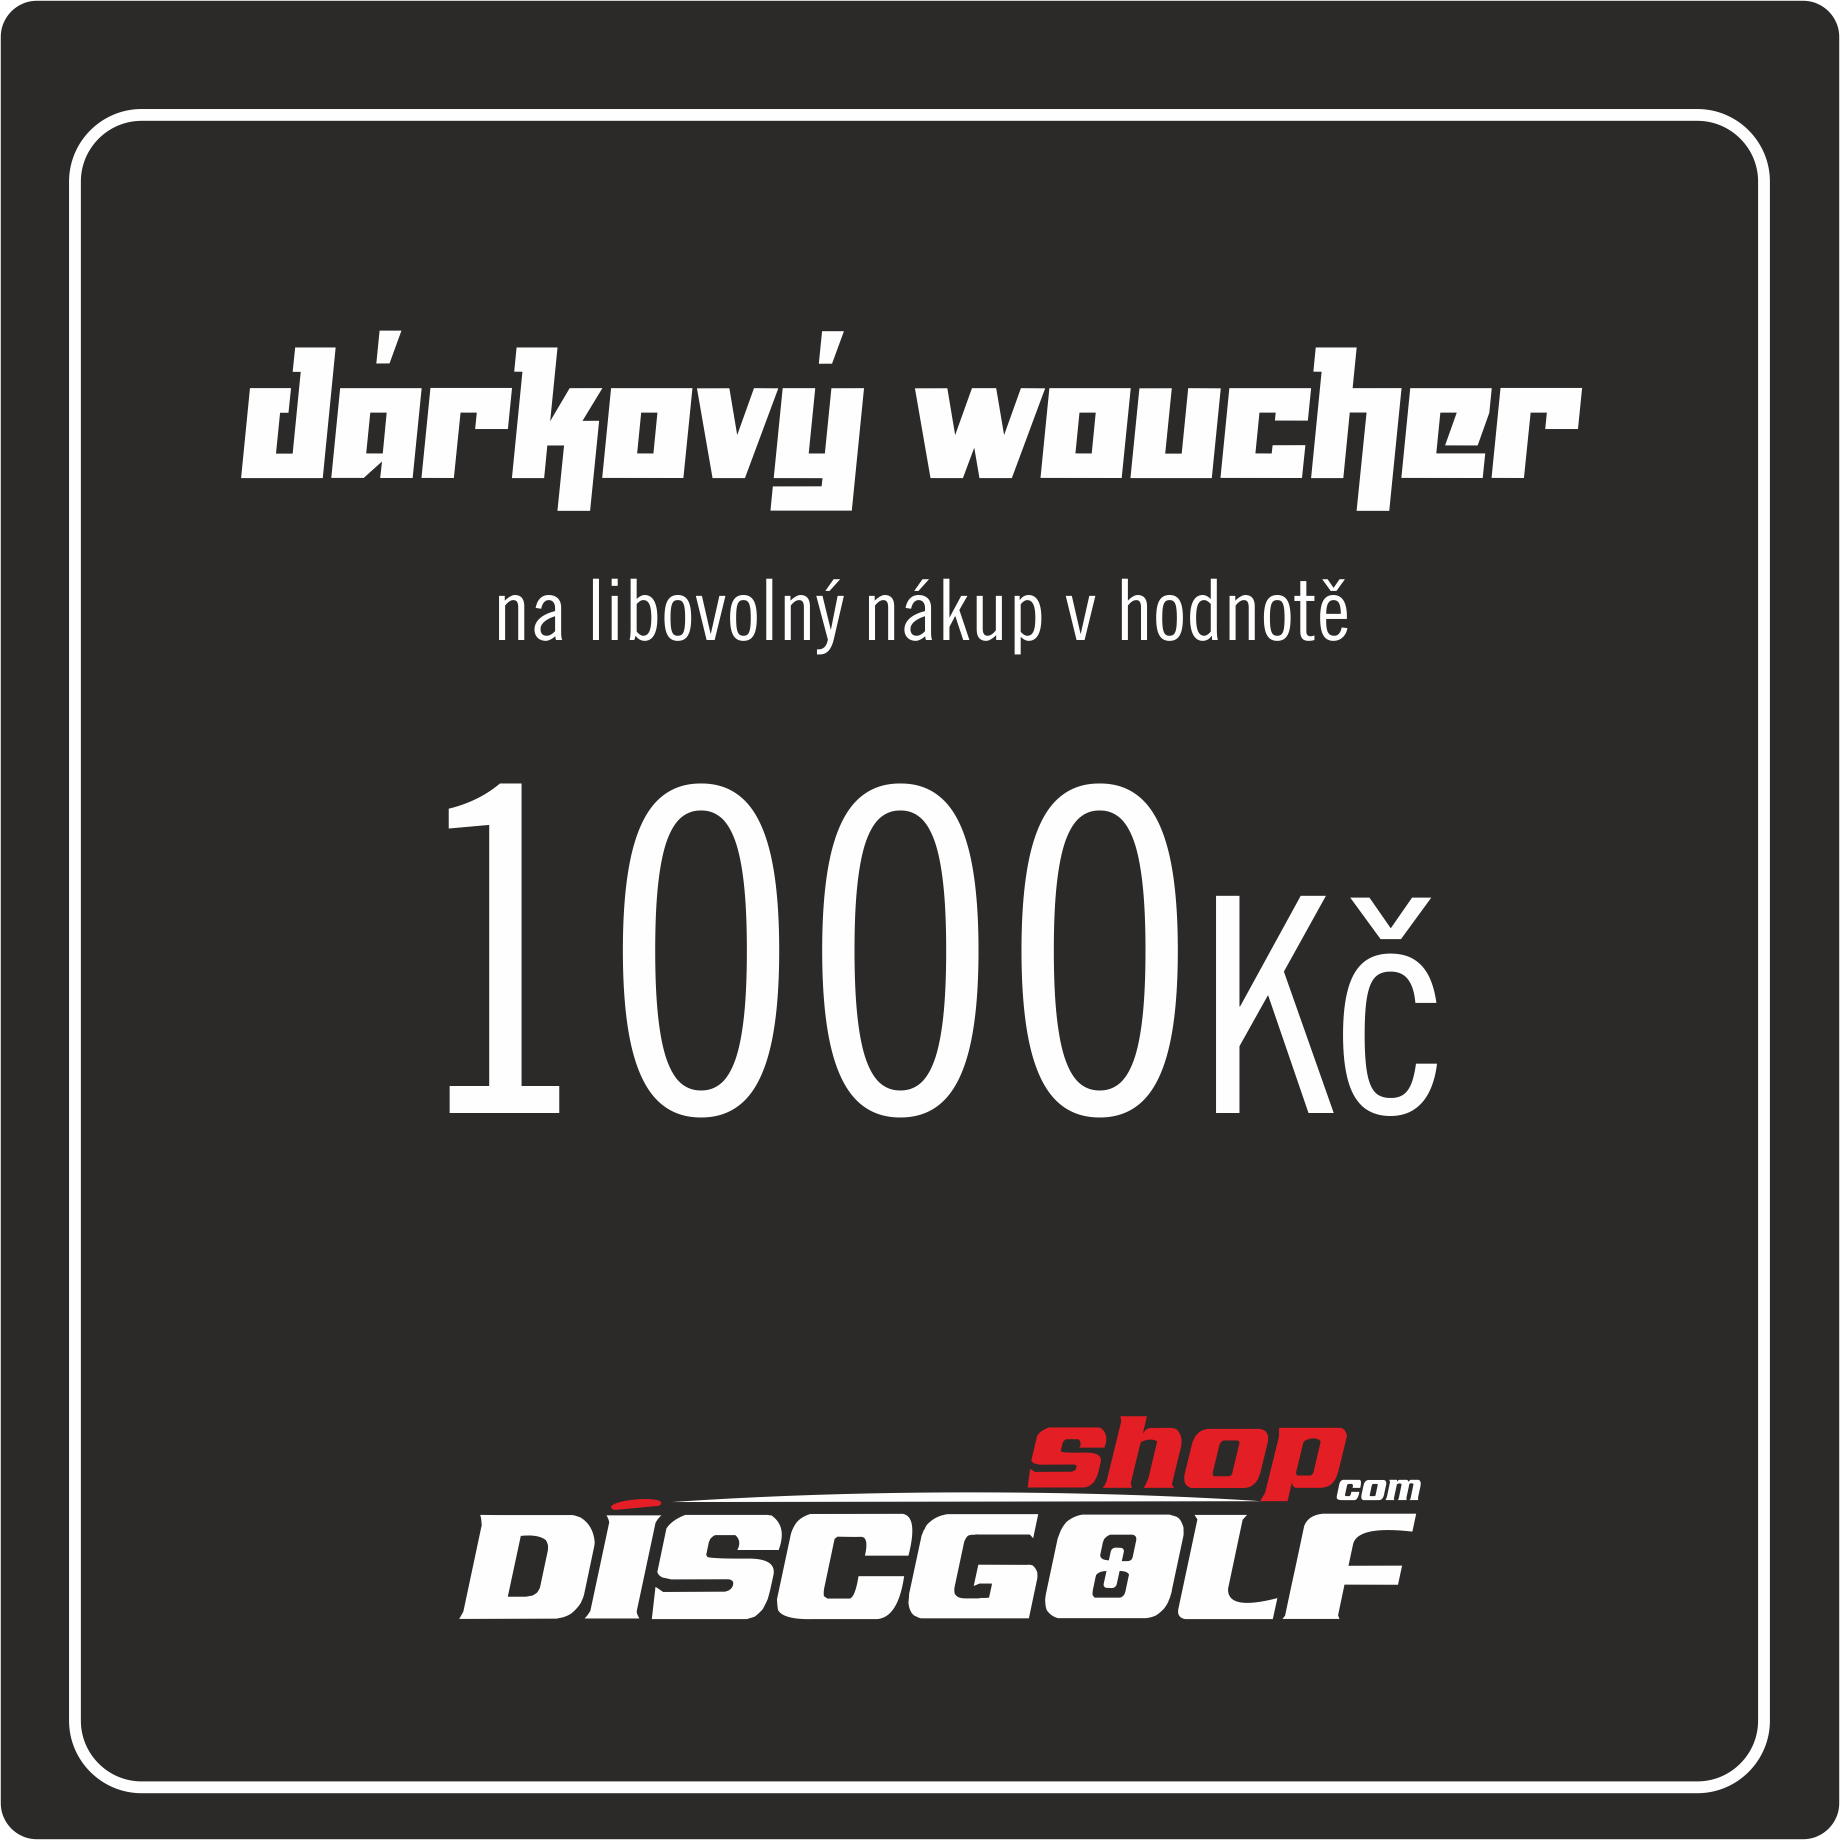      Dárkový woucher - kupon 1000Kč